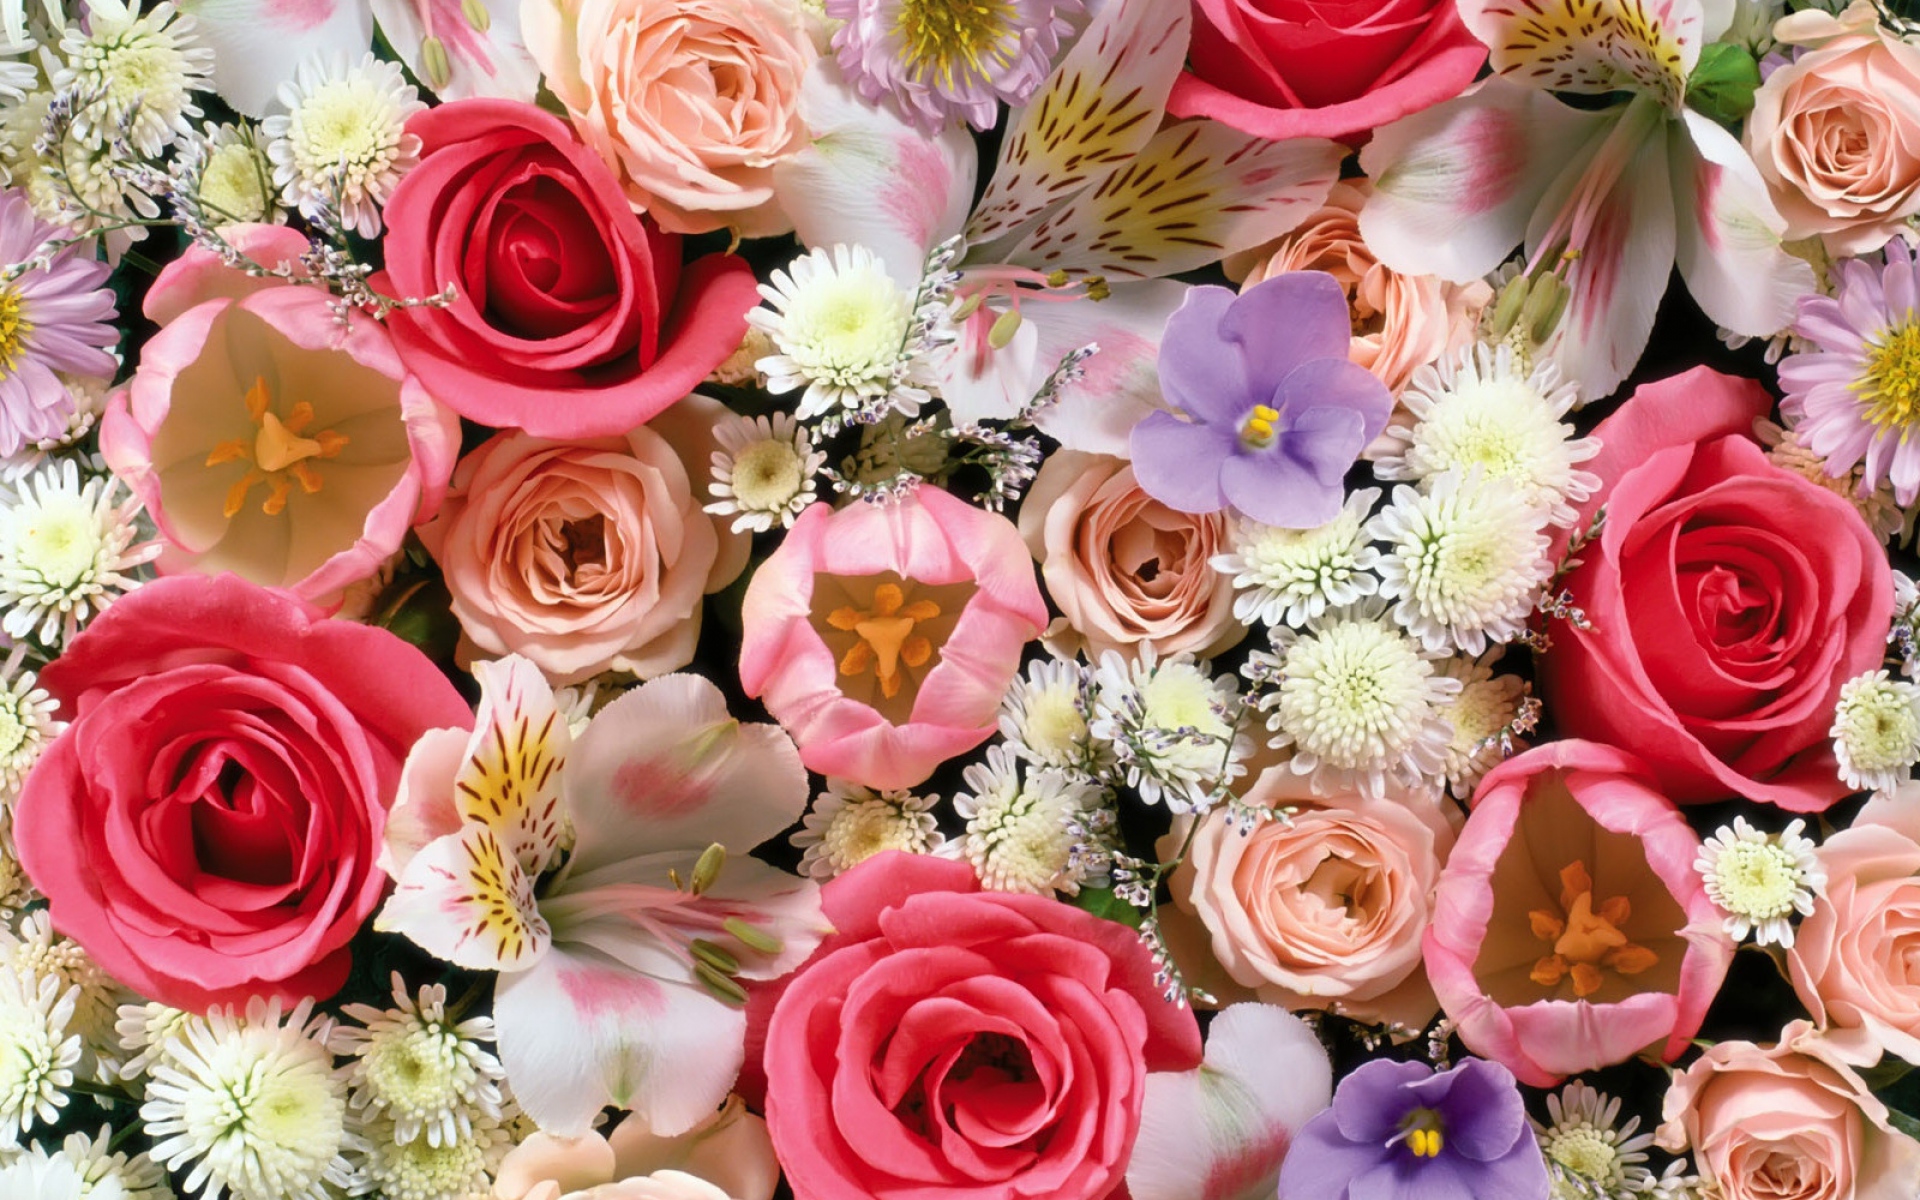 Картинки Розы, лилии, тюльпаны, цветы, ассорти фото и обои на рабочий стол